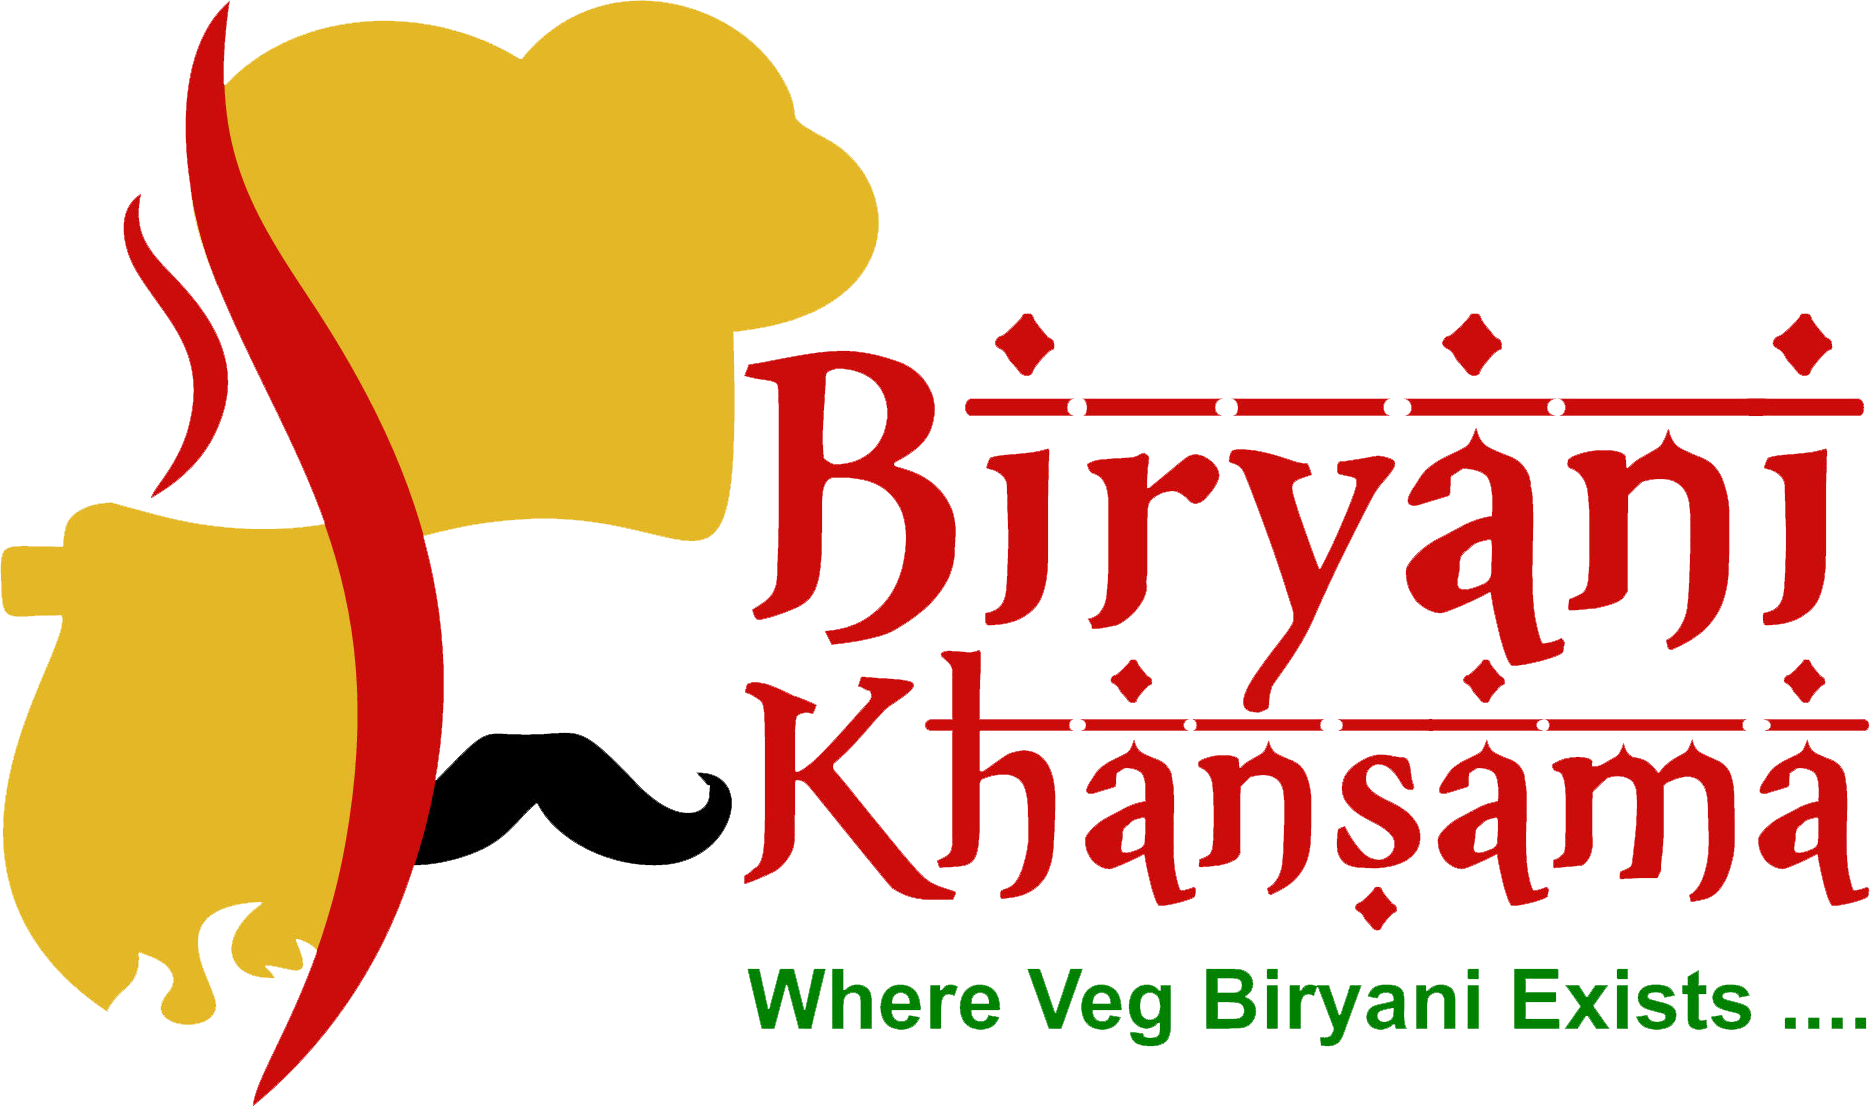 Creative (Biryani) logo template, Biryani sticker, vector illustration.  Stock Vector | Adobe Stock